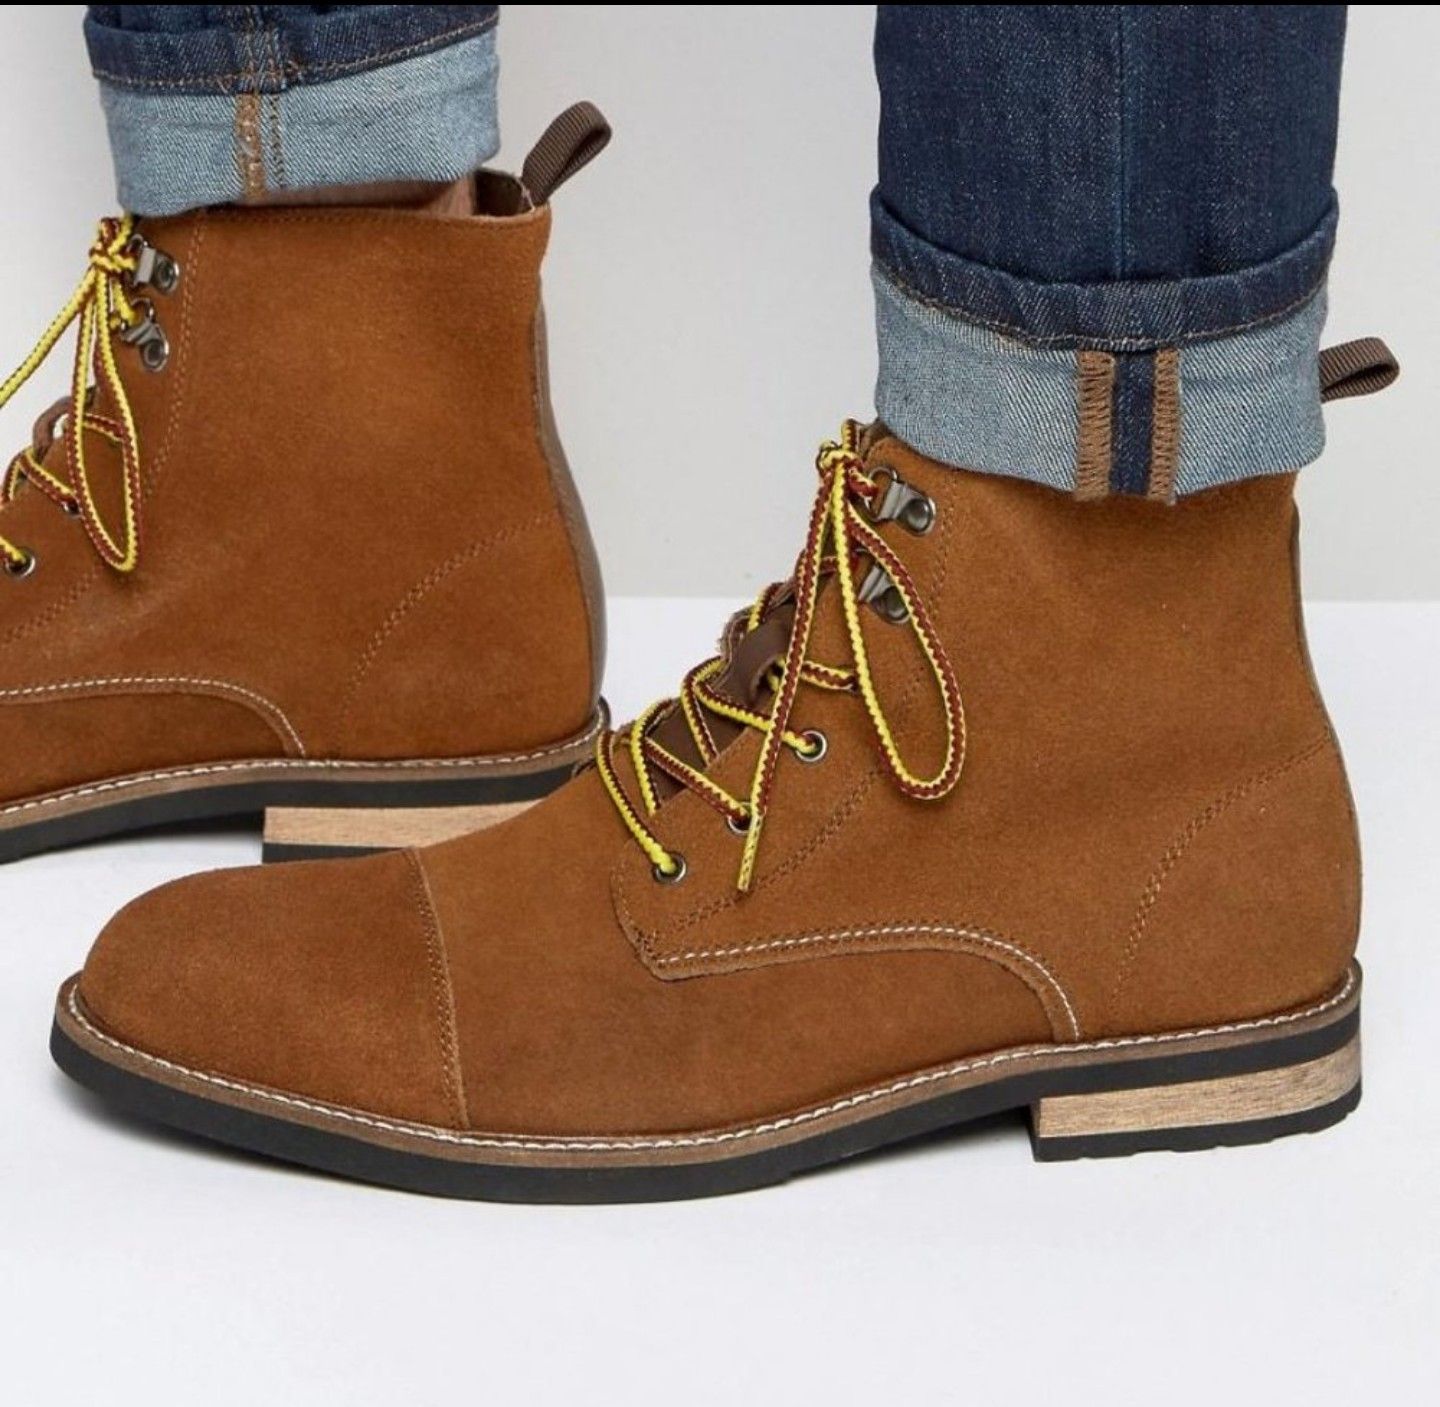 Bellfield Banrock boots